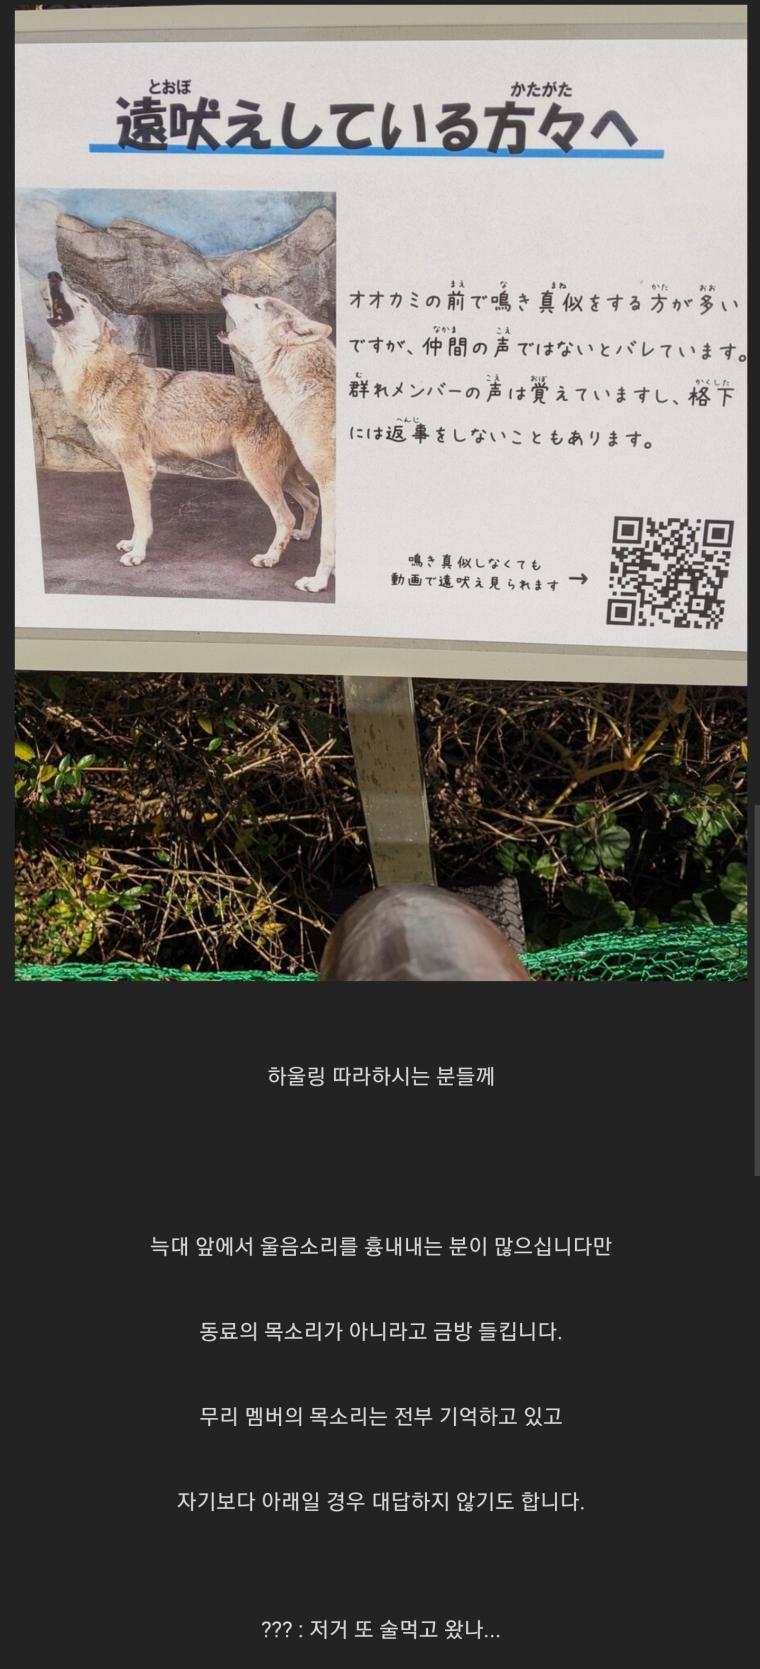 1 어느 동물원의 늑대 우리 앞에 써있는 경고문.jpg